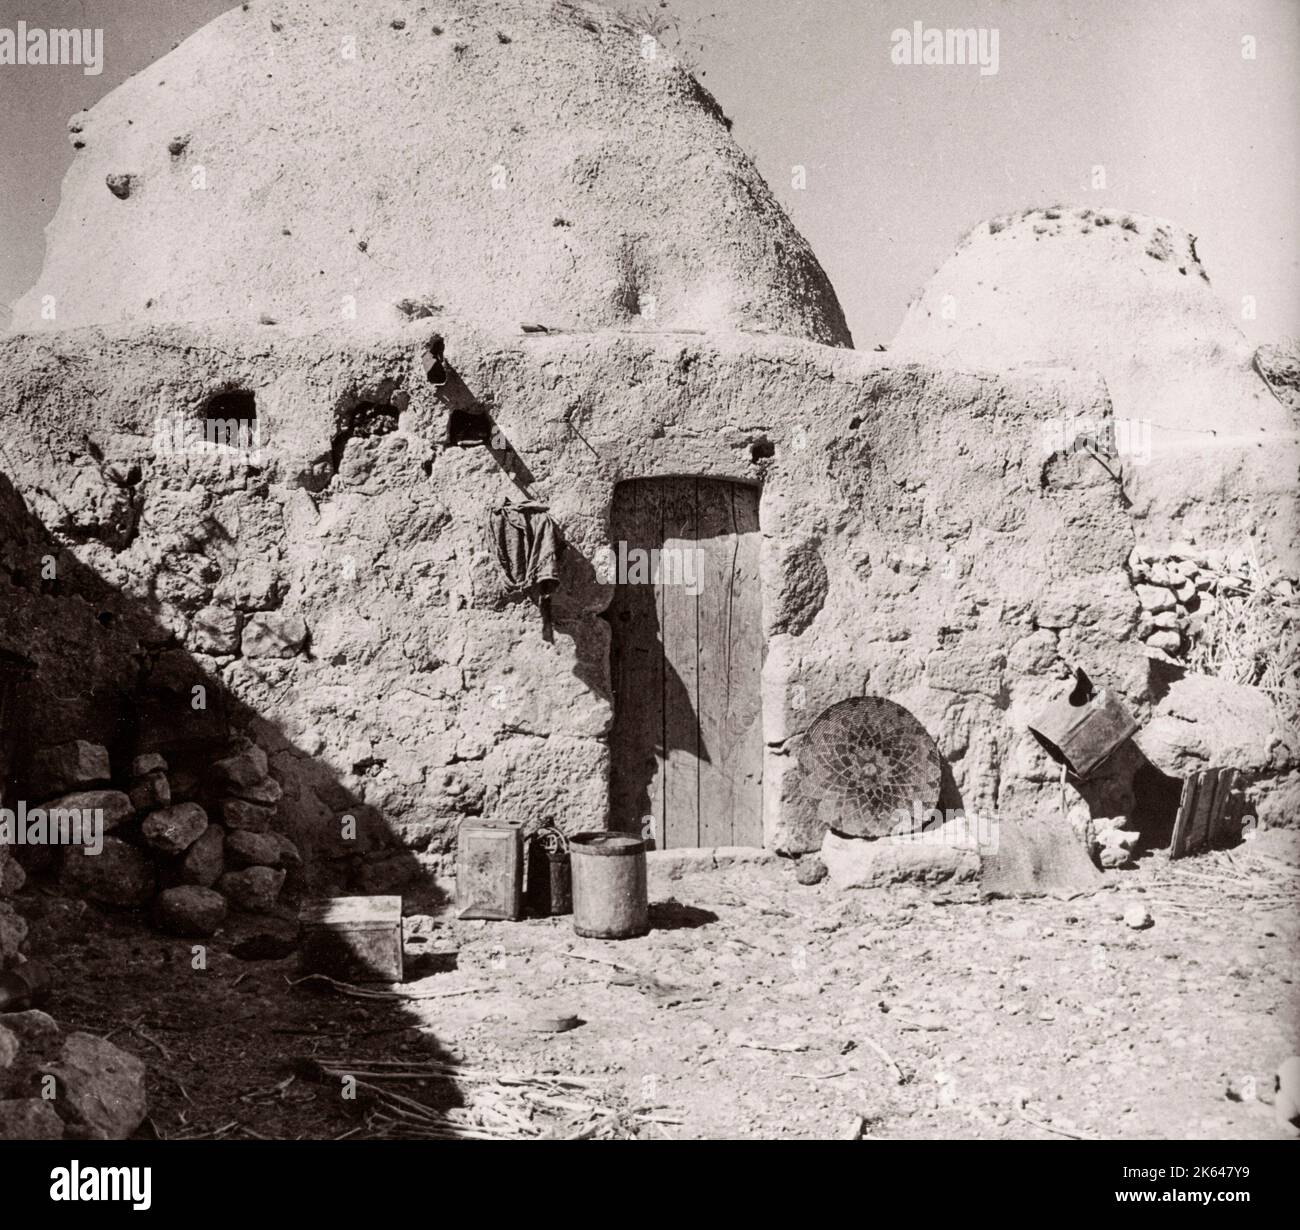 1943 Syrie - Kafer ou Kafr Halab - village avec des maisons traditionnelles de ruches de boue Photographie par un officier de recrutement de l'armée britannique stationné en Afrique de l'est et au Moyen-Orient pendant la Seconde Guerre mondiale Banque D'Images